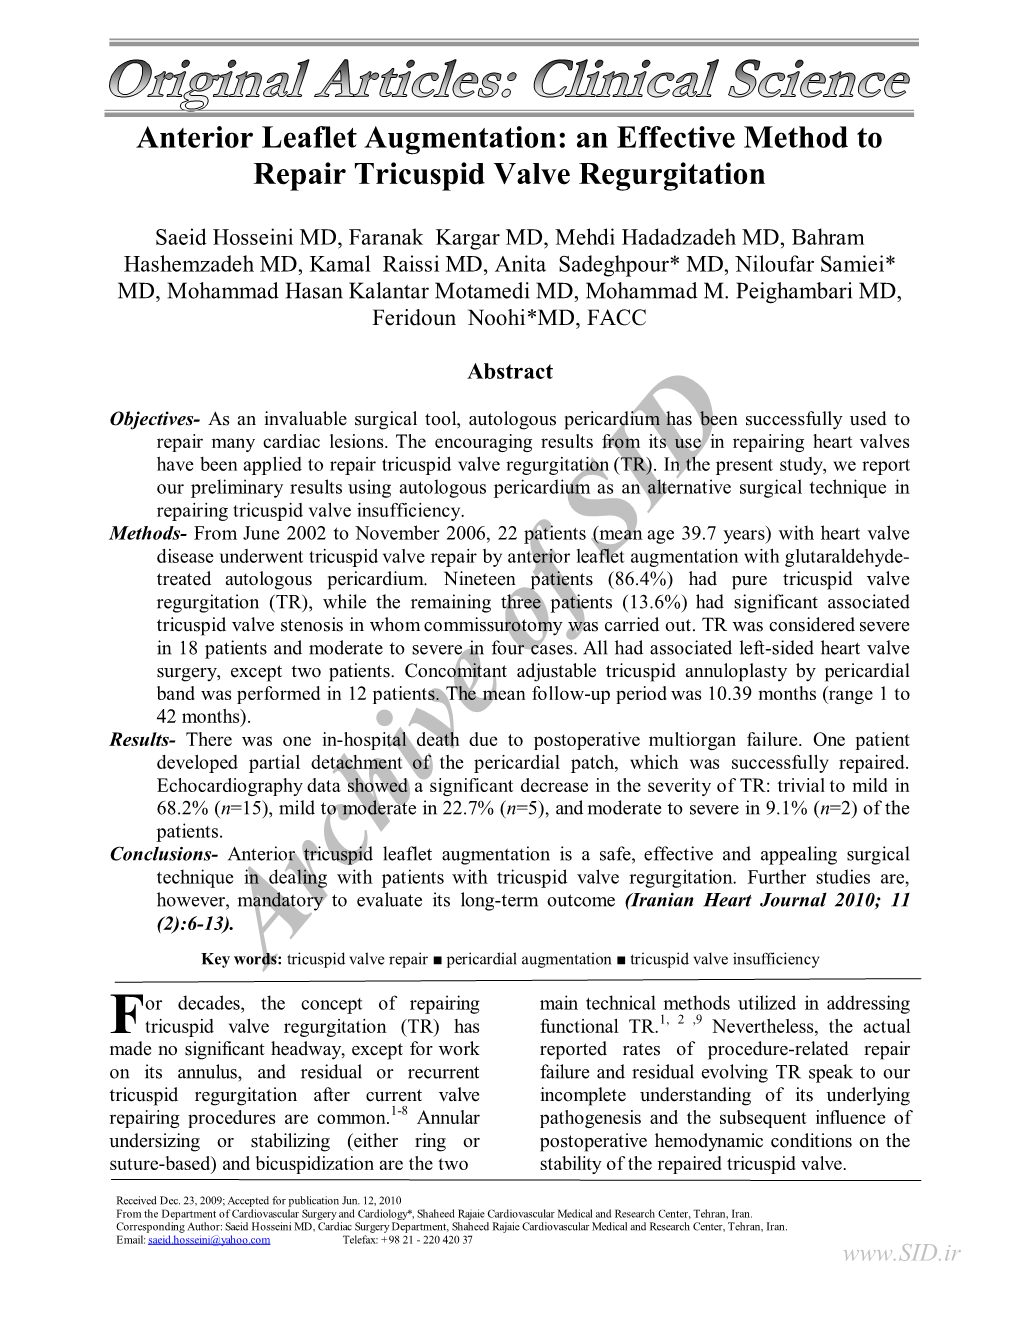 An Effective Method to Repair Tricuspid Valve Regurgitation